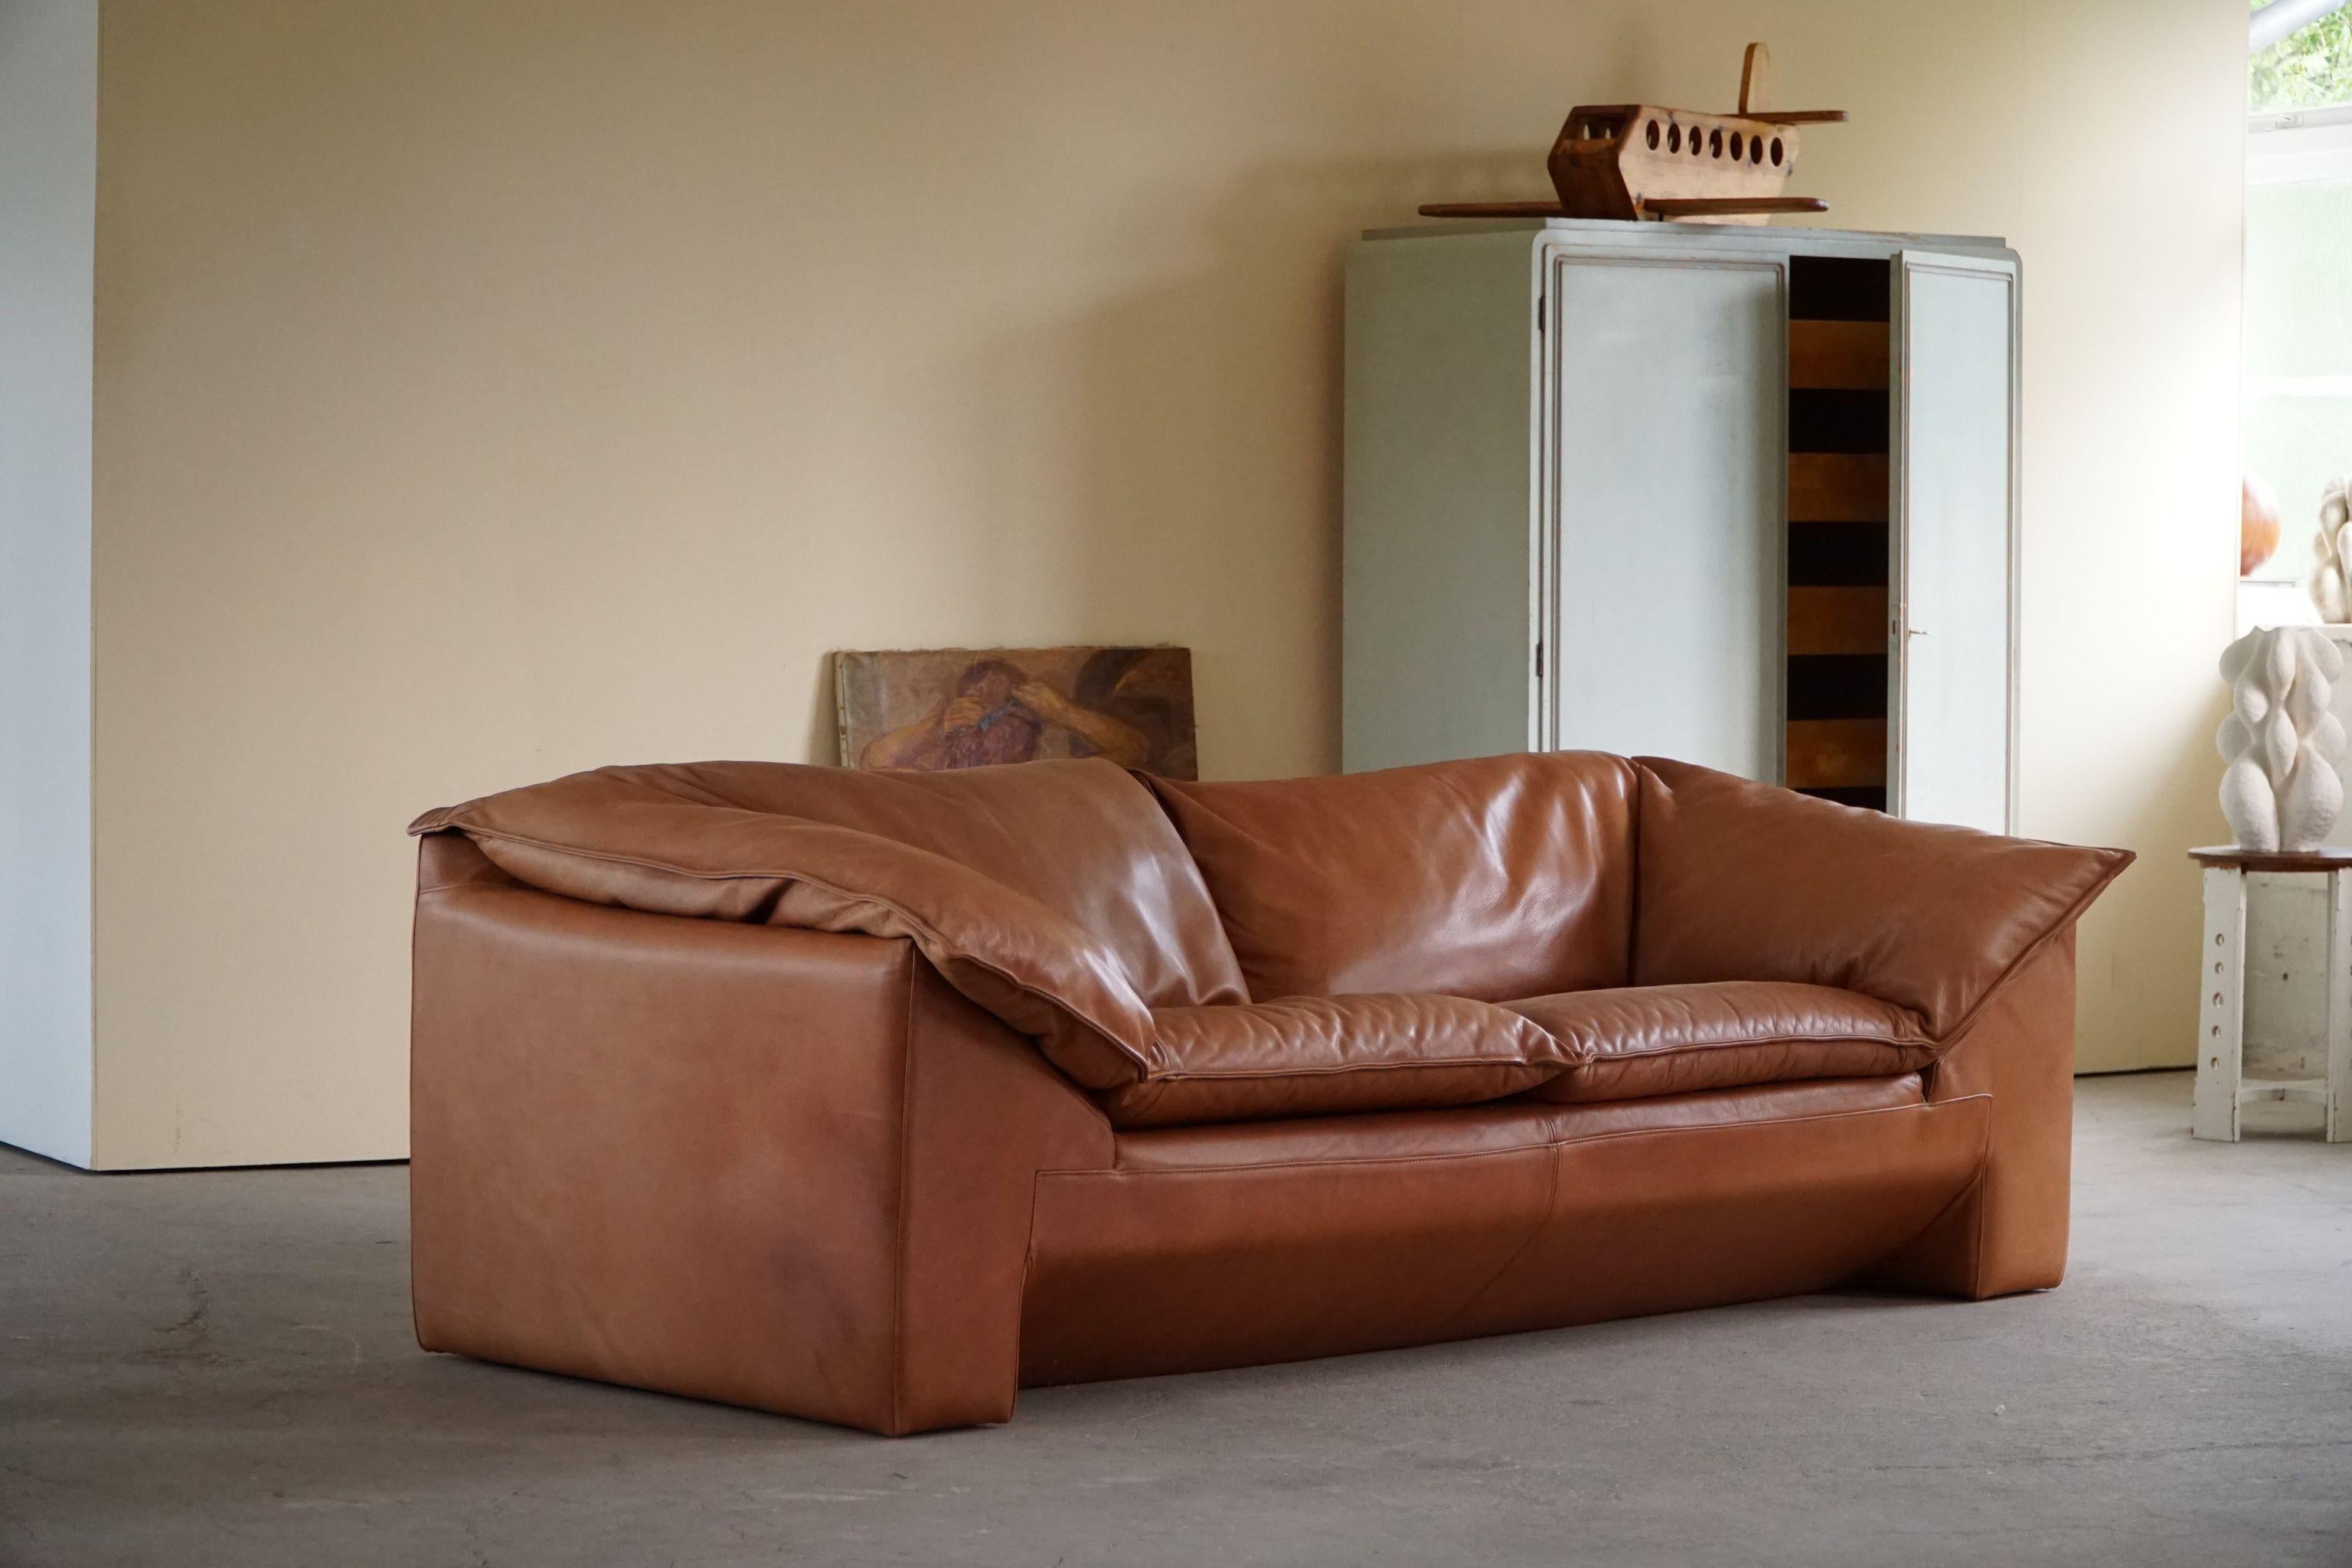 Wunderschönes klassisches dänisches 2,5-Sitzer-Sofa in cognacbraunem Leder. Entworfen von Jens Juul Eilersen für Niels Eilersen, Dänemark, 1970er Jahre. Das Design erinnert uns an einige der besten italienischen Klassiker. Der Gesamteindruck dieses